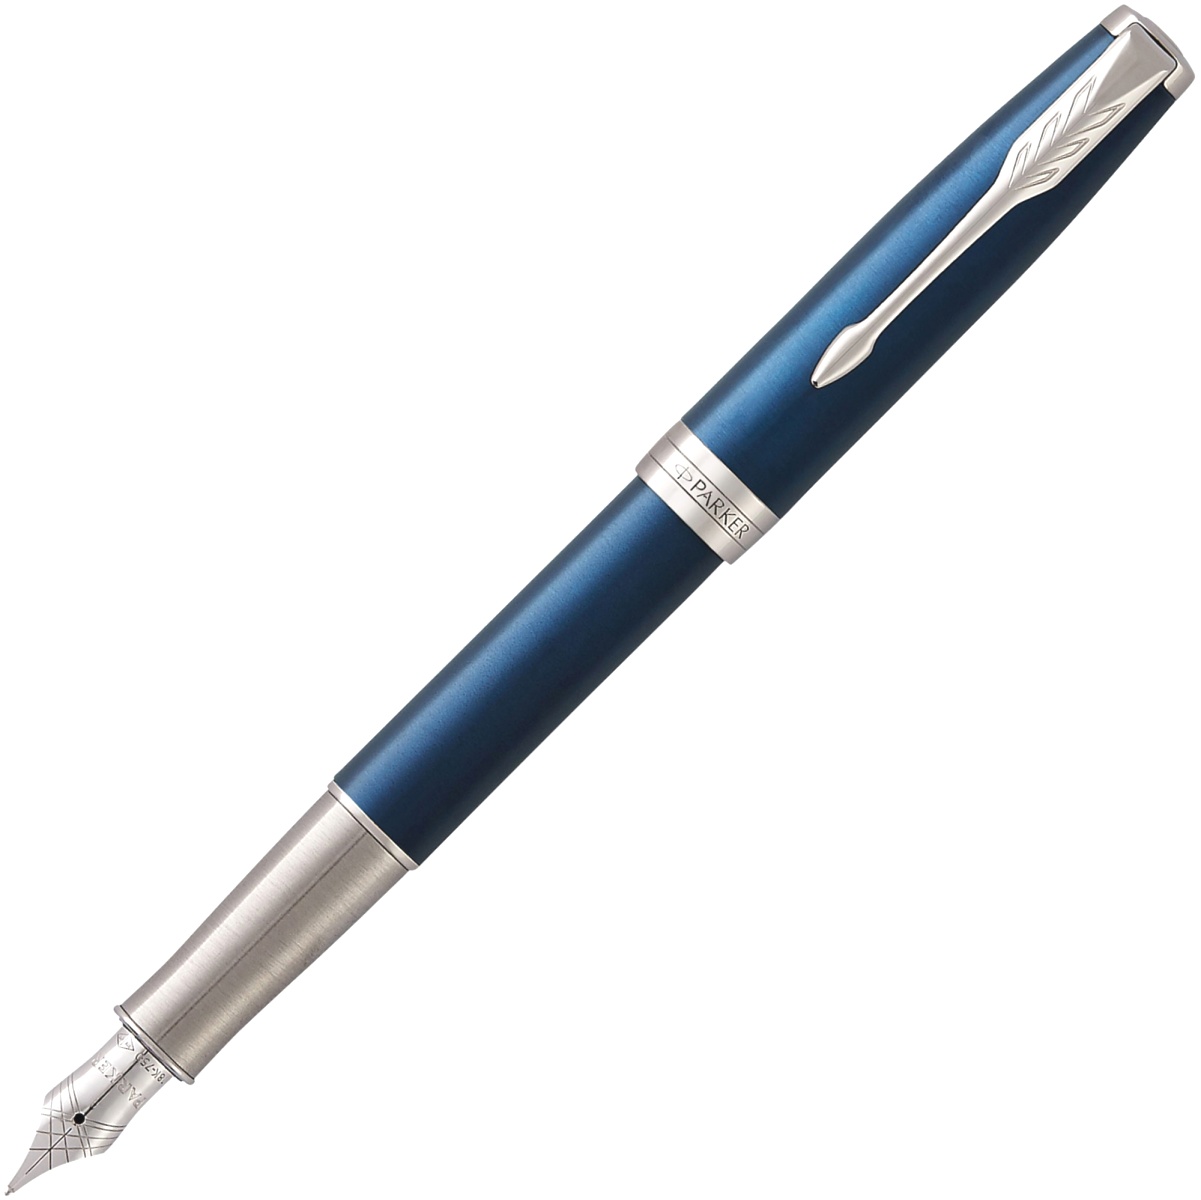  Перьевая ручка Parker Sonnet F539, Subtle Blue Lacquer CT (Перо F)